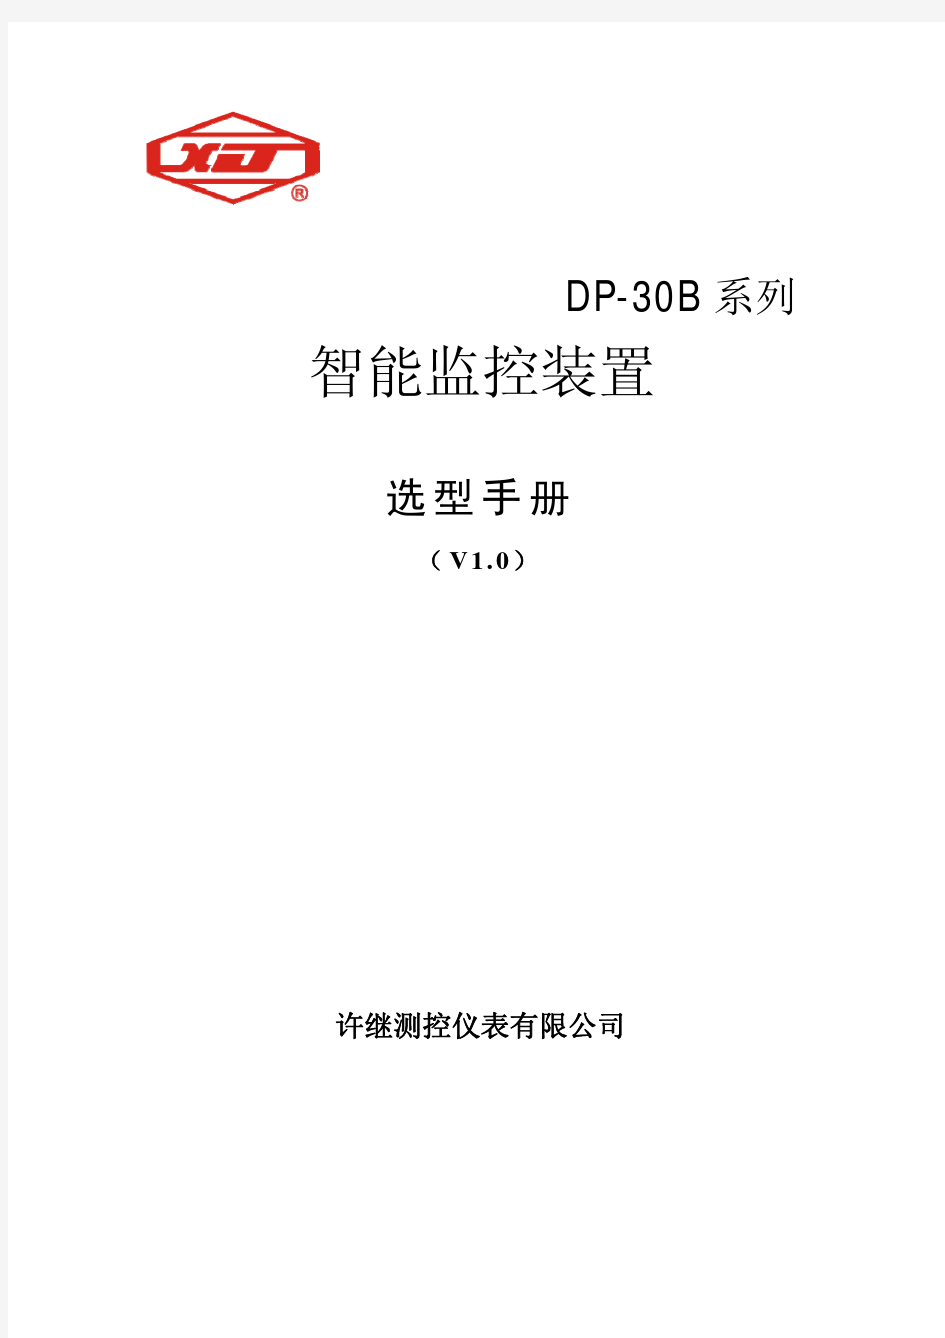 许继测控仪表有限公司DP-30B产品选型手册